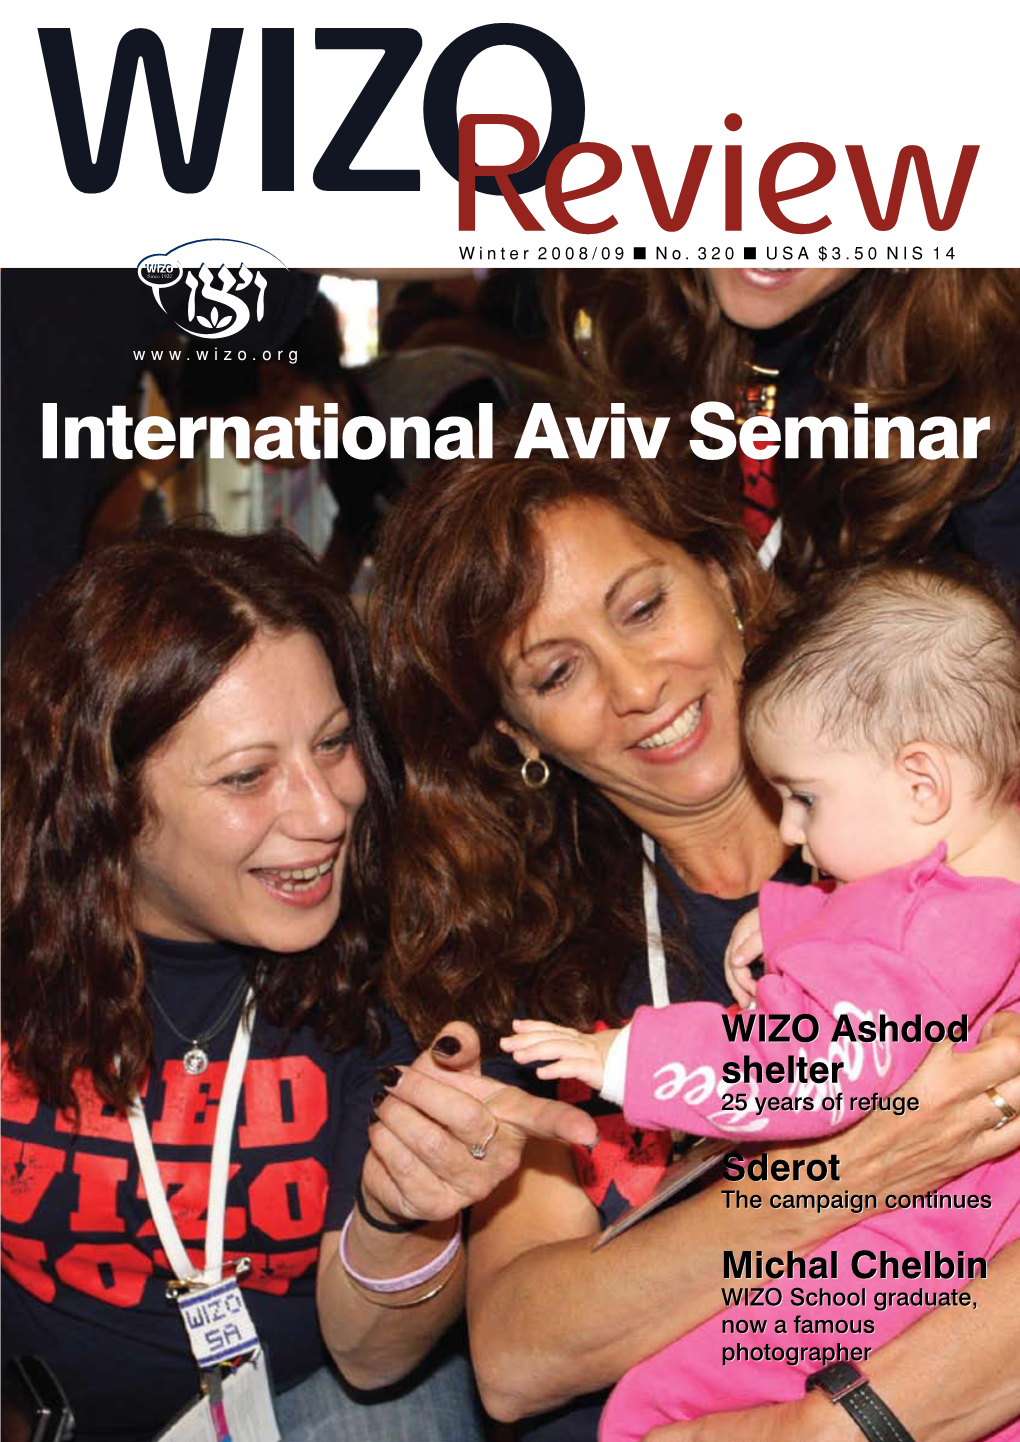 International Aviv Seminar